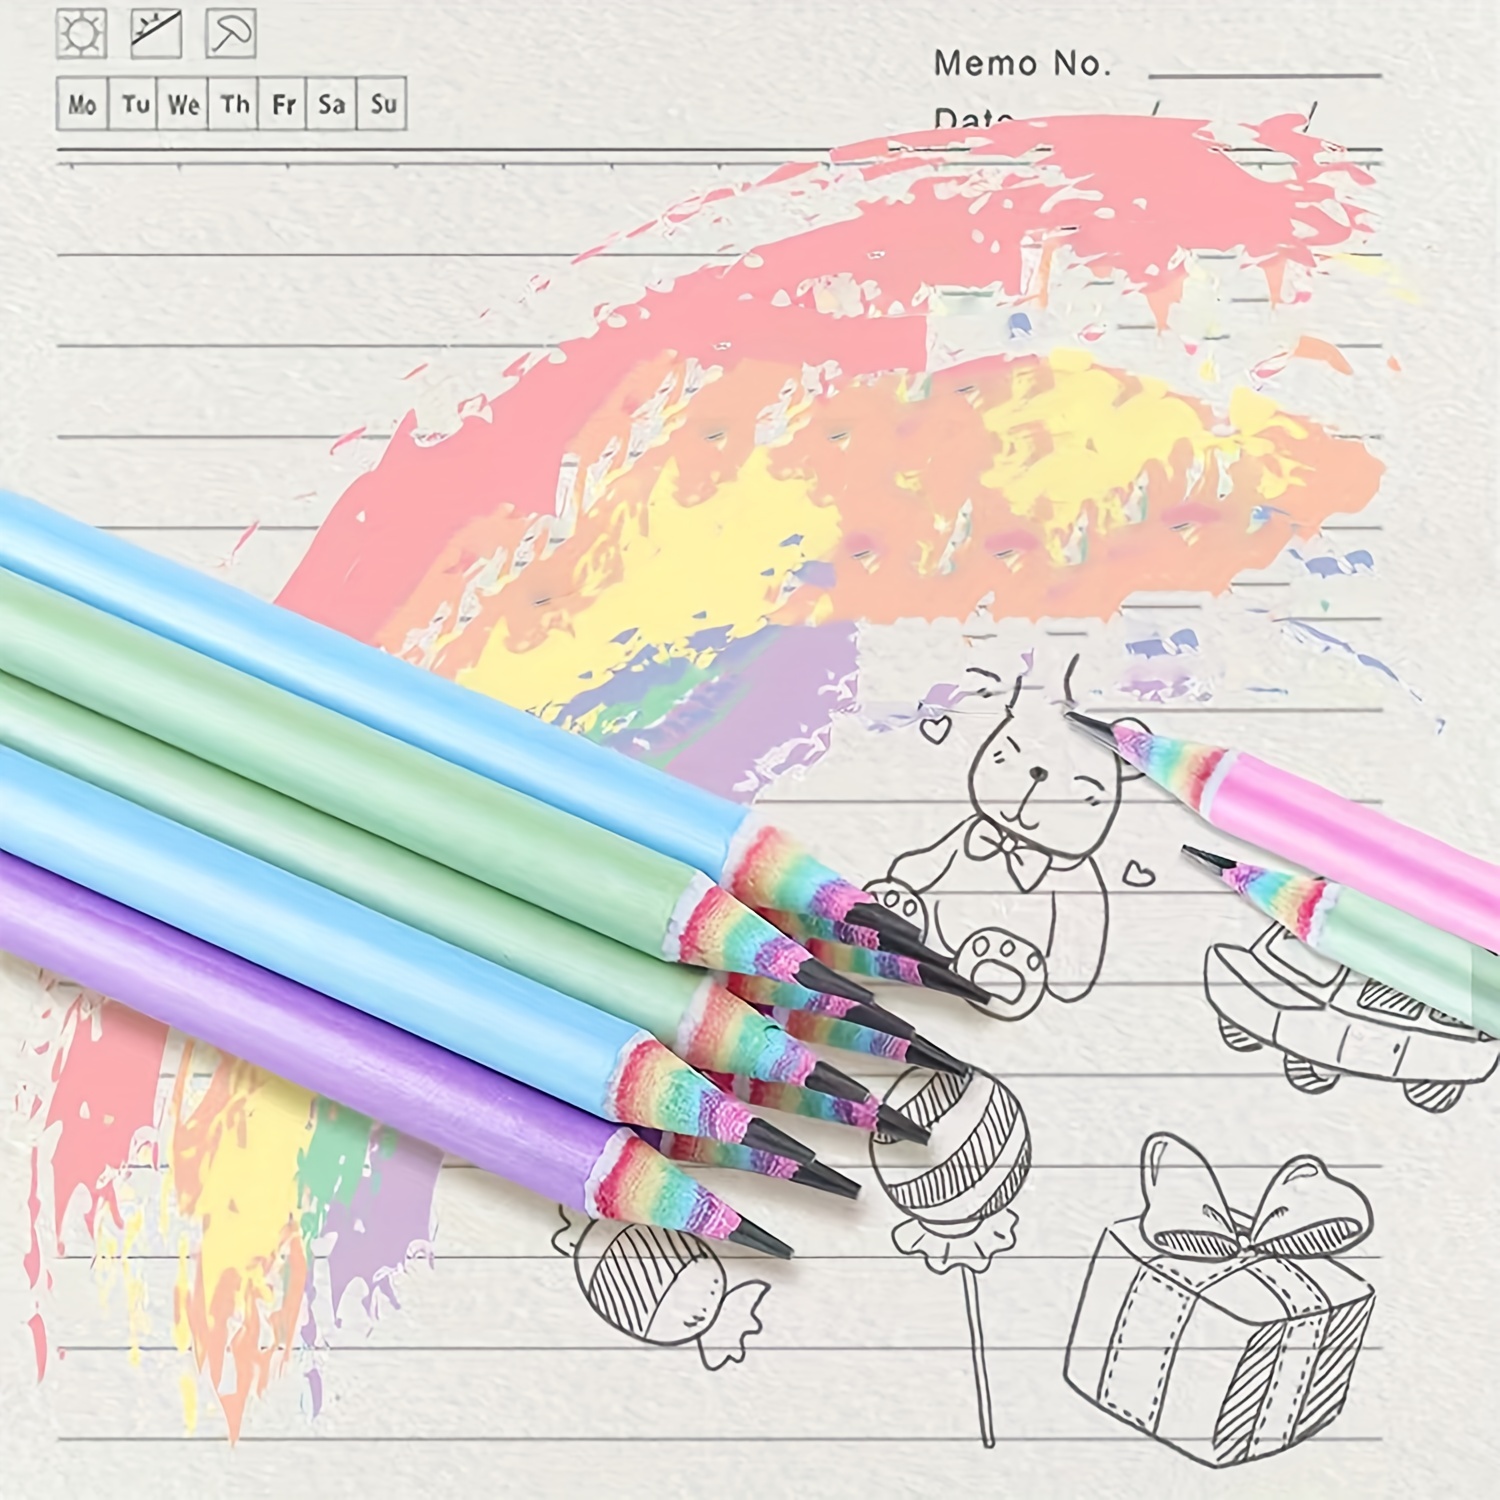 Grantop Lot de 16 crayons arc-en-ciel - 8 couleurs - Papier recyclé  arc-en-ciel - Crayons HB pour dessiner - Crayons de dessin pour débutants 